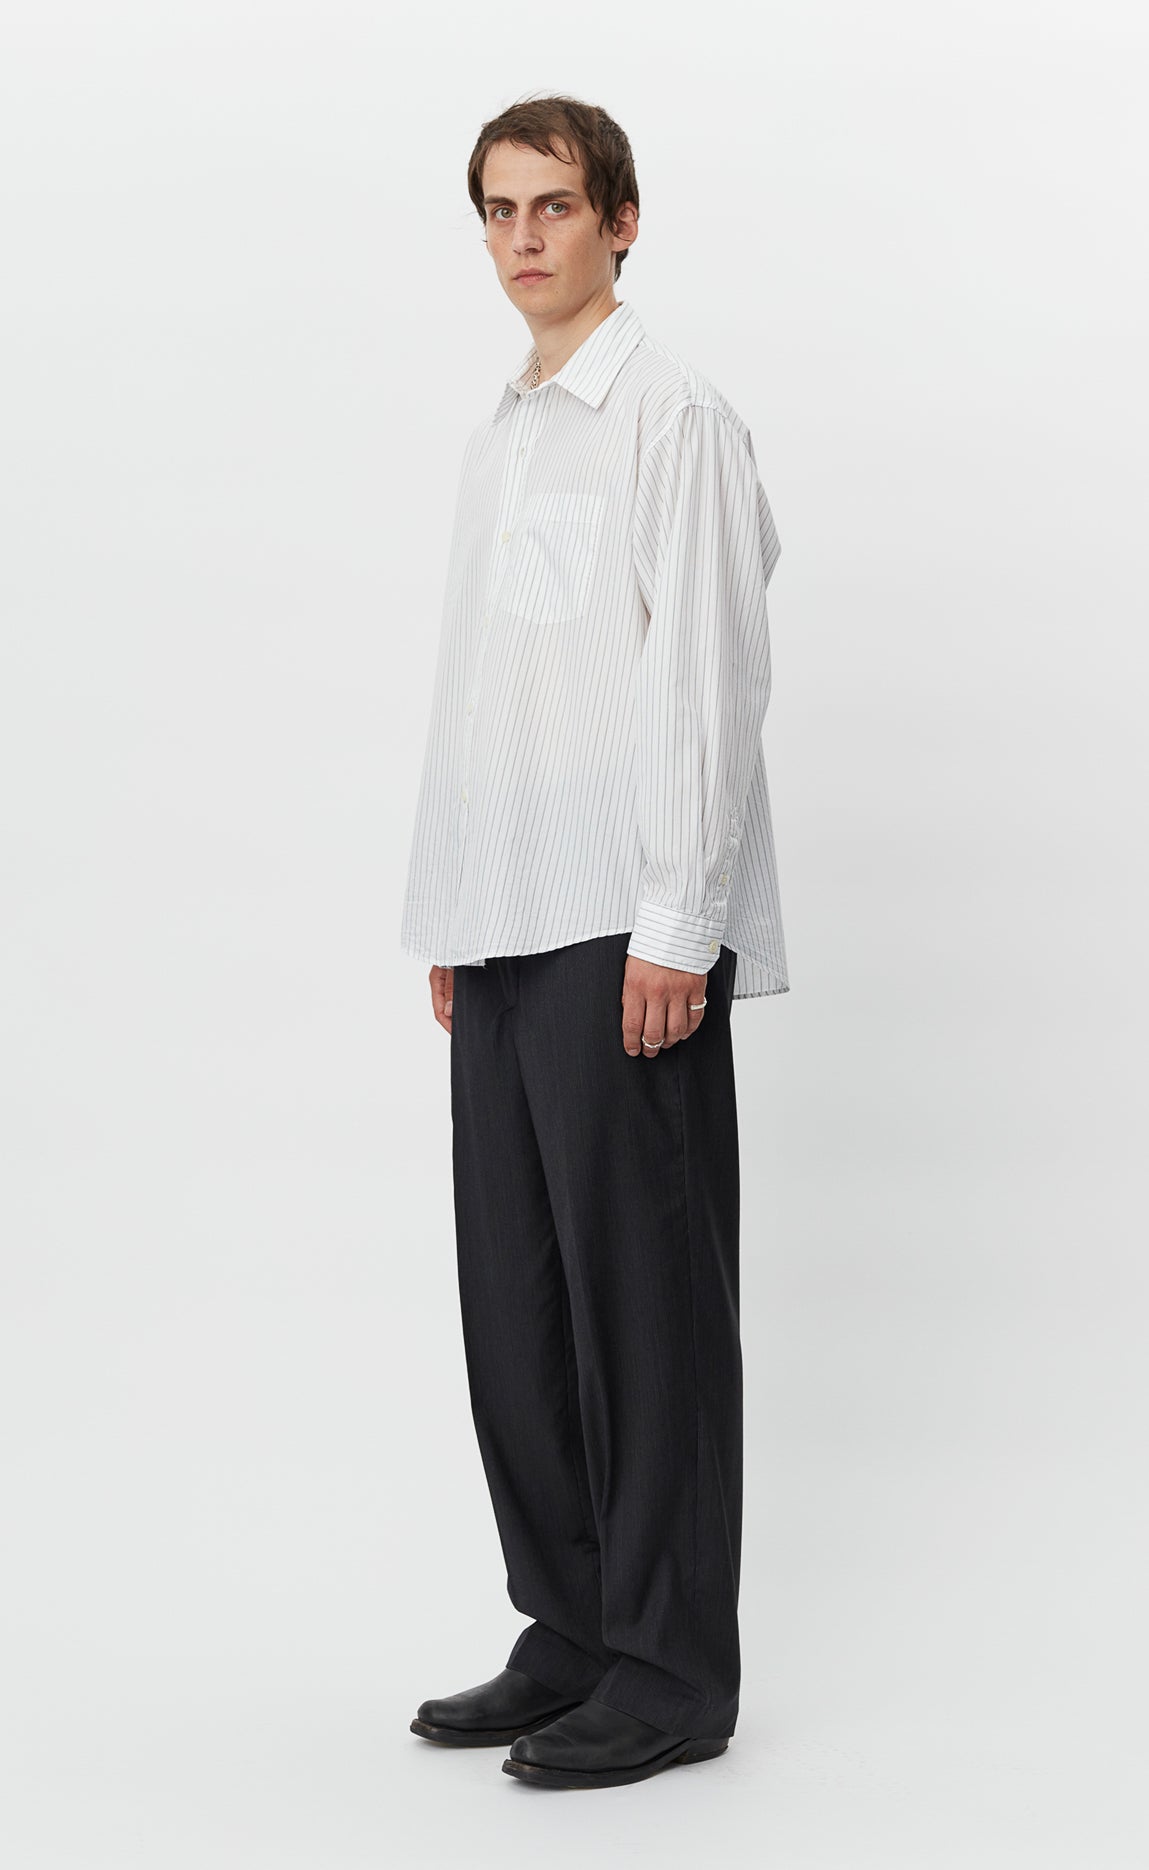 Executive Shirt - White Stripe